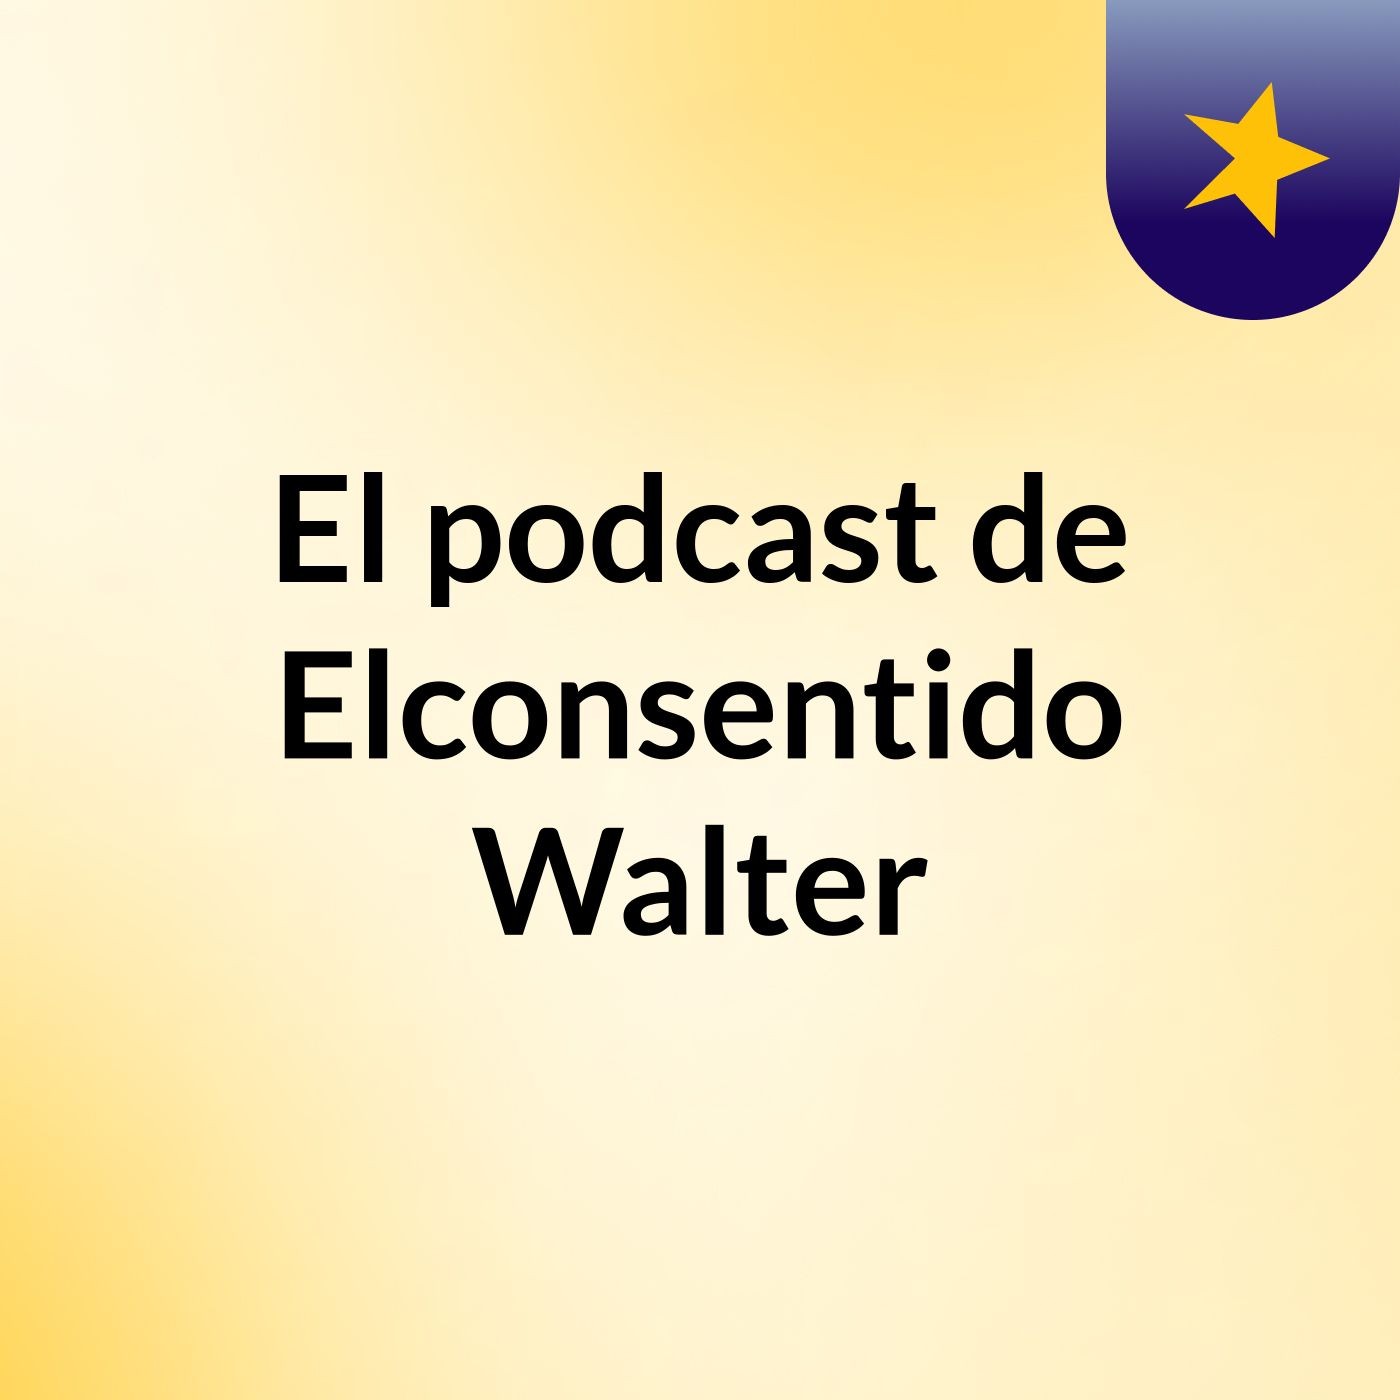 El podcast de Elconsentido Walter